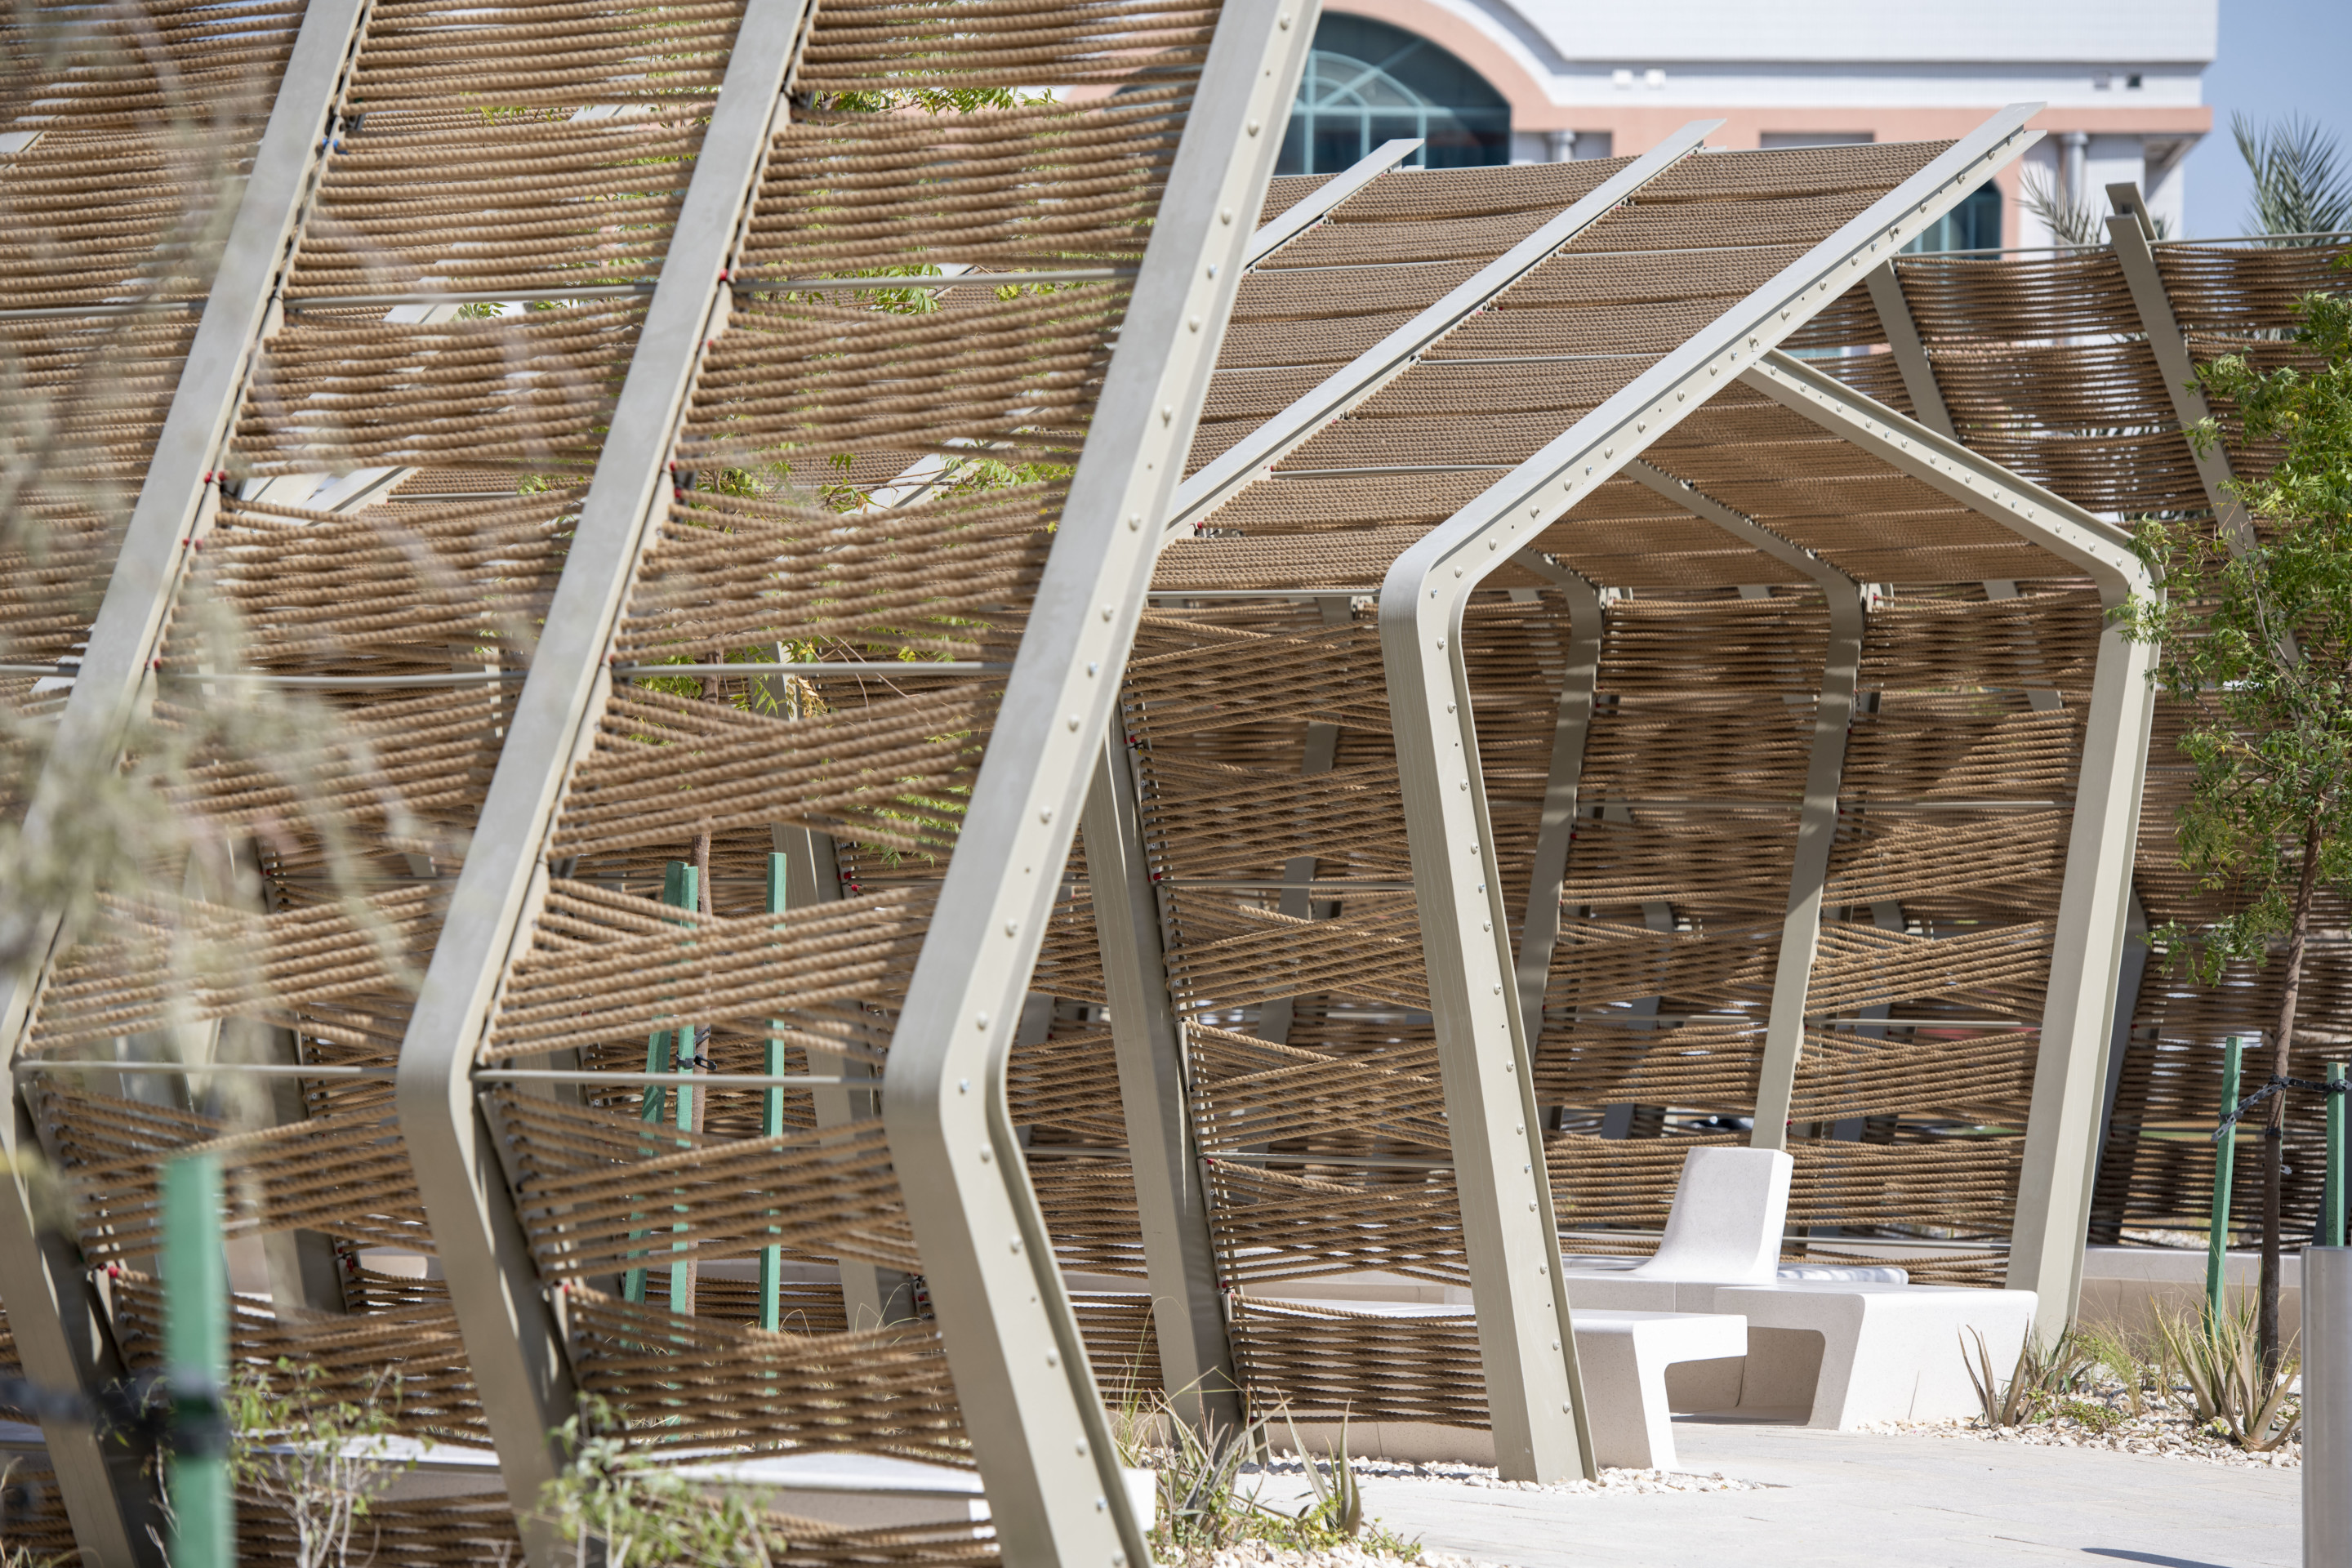 Timber wrapped shading pavilions designed by Kishore Varanasi